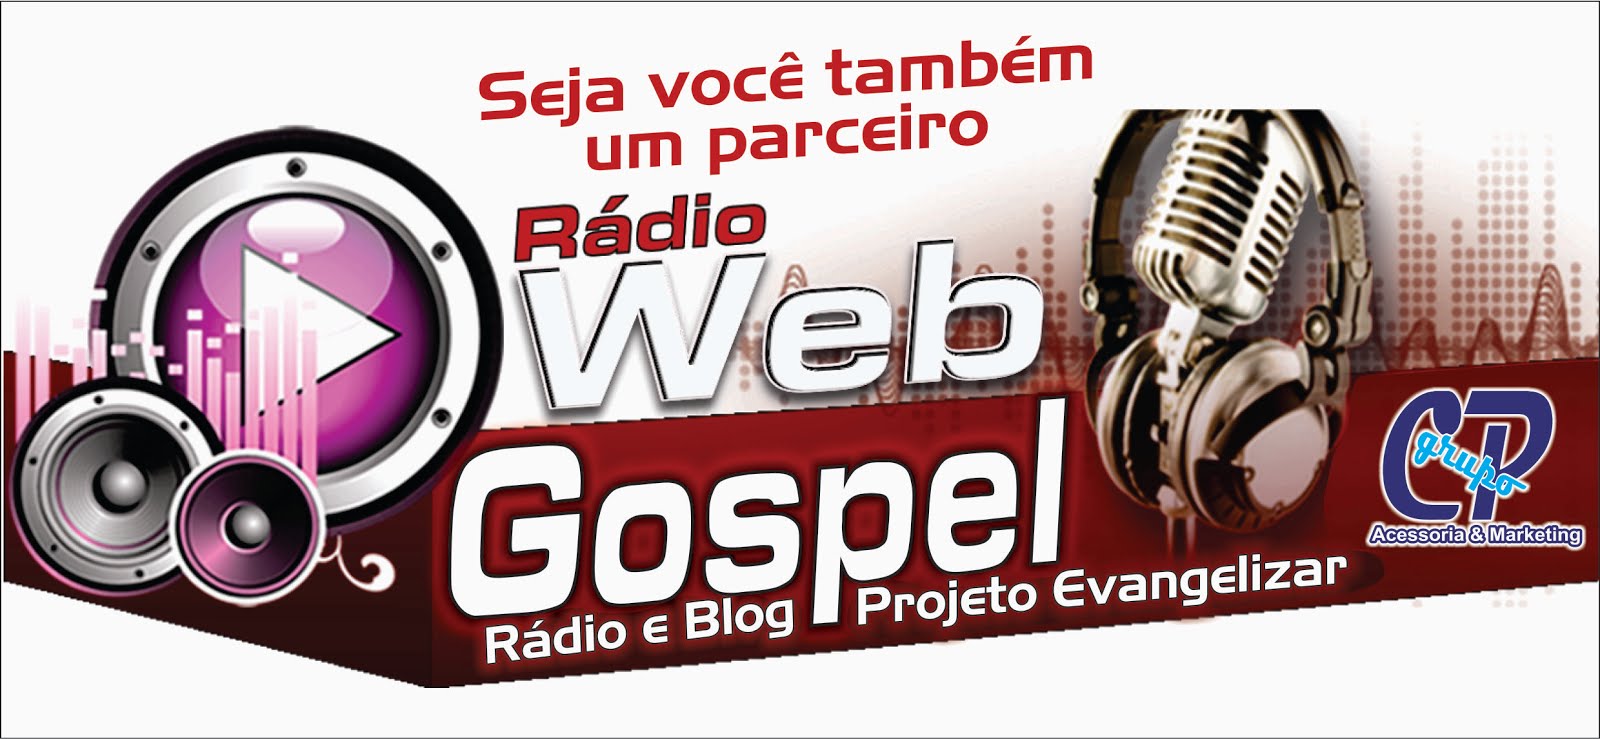 Radio web projeto evangelizar a sua melhor opção